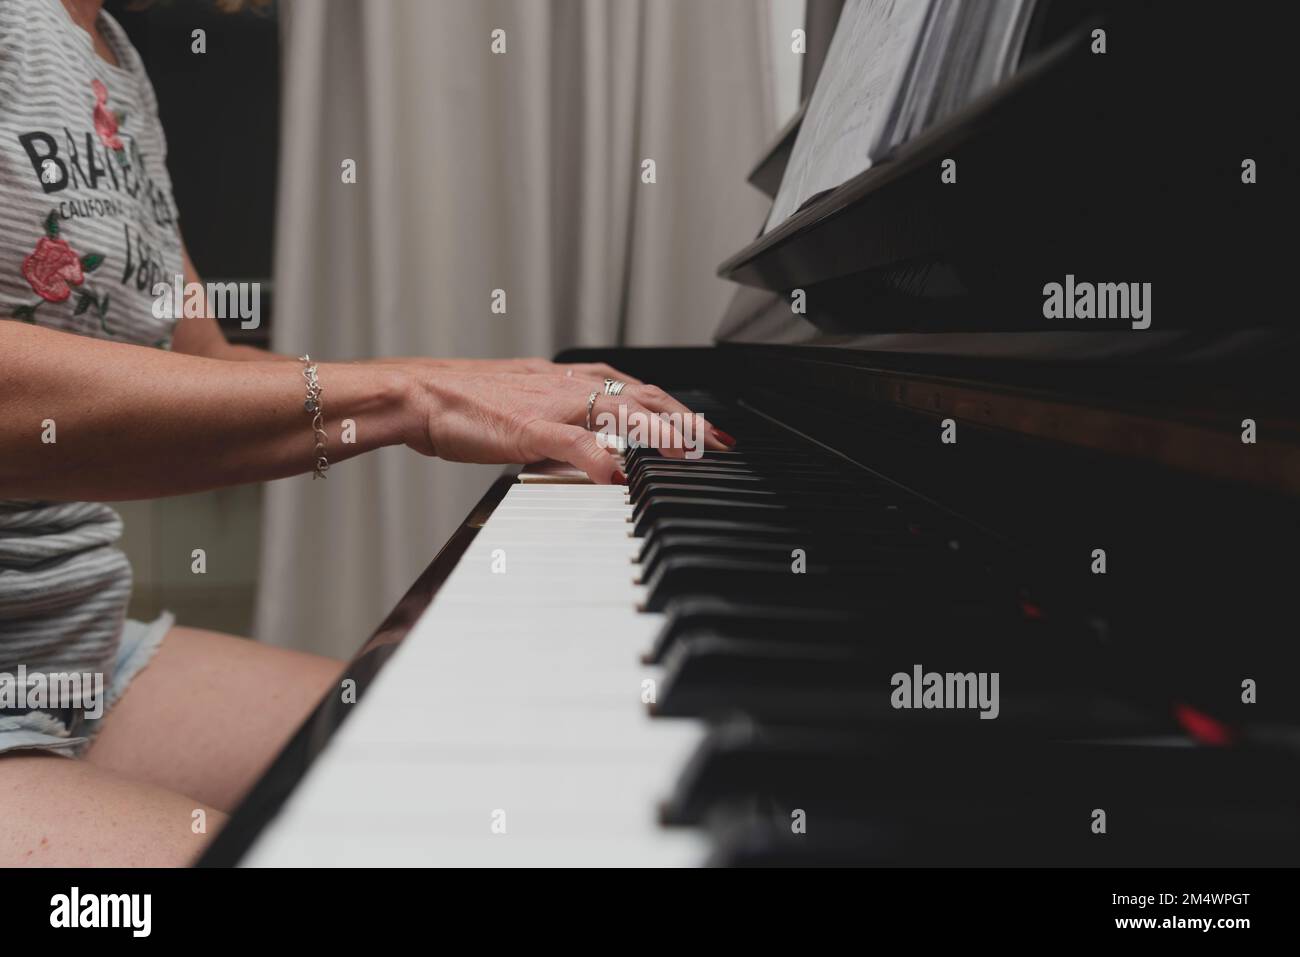 Schöne brasilianische Pianistin, die Klaviertasten berührt und Klavier spielt. Konzept Musikunterricht und Kunst. Entspannen und fröhlich. Stockfoto